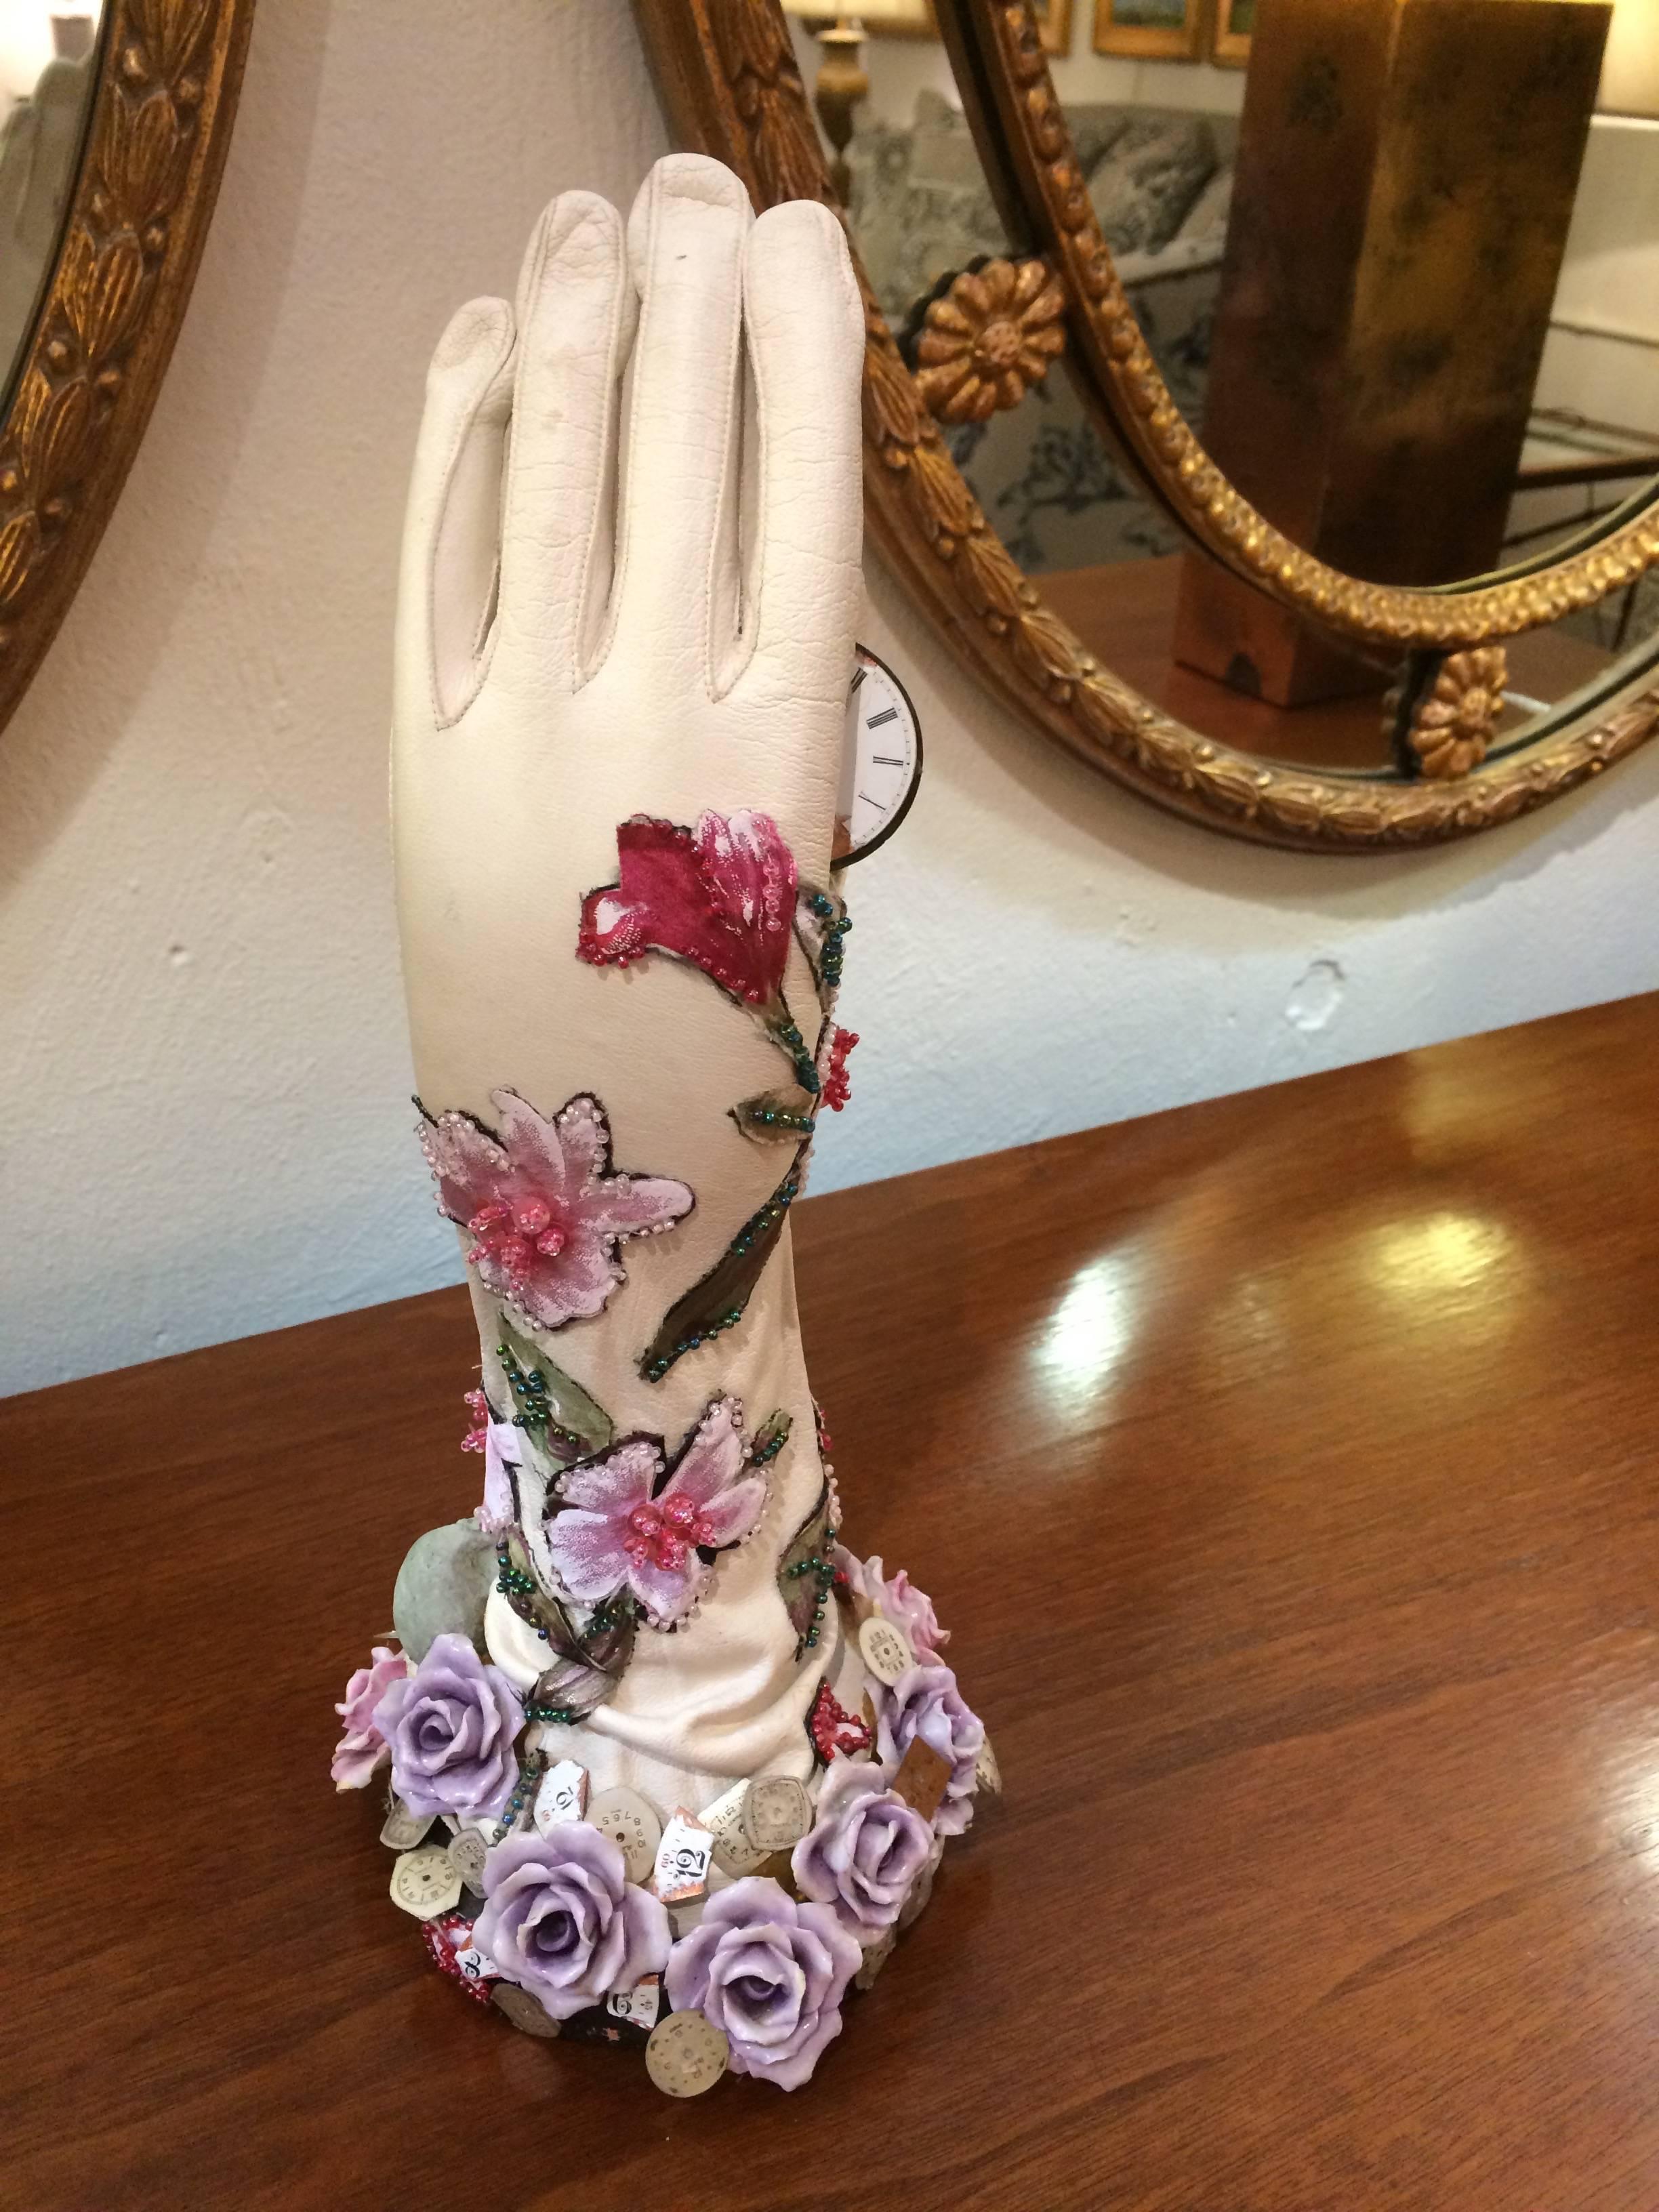 Nachdenkliche Mischtechnik-Skulptur einer Hand mit Lederhandschuhen, die mit Porzellanblumen, floralen Perlenverzierungen und einem Totenkopf verziert ist und provokativ ein rosafarbenes Ziffernblatt hält, das den Lauf der Zeit andeutet.